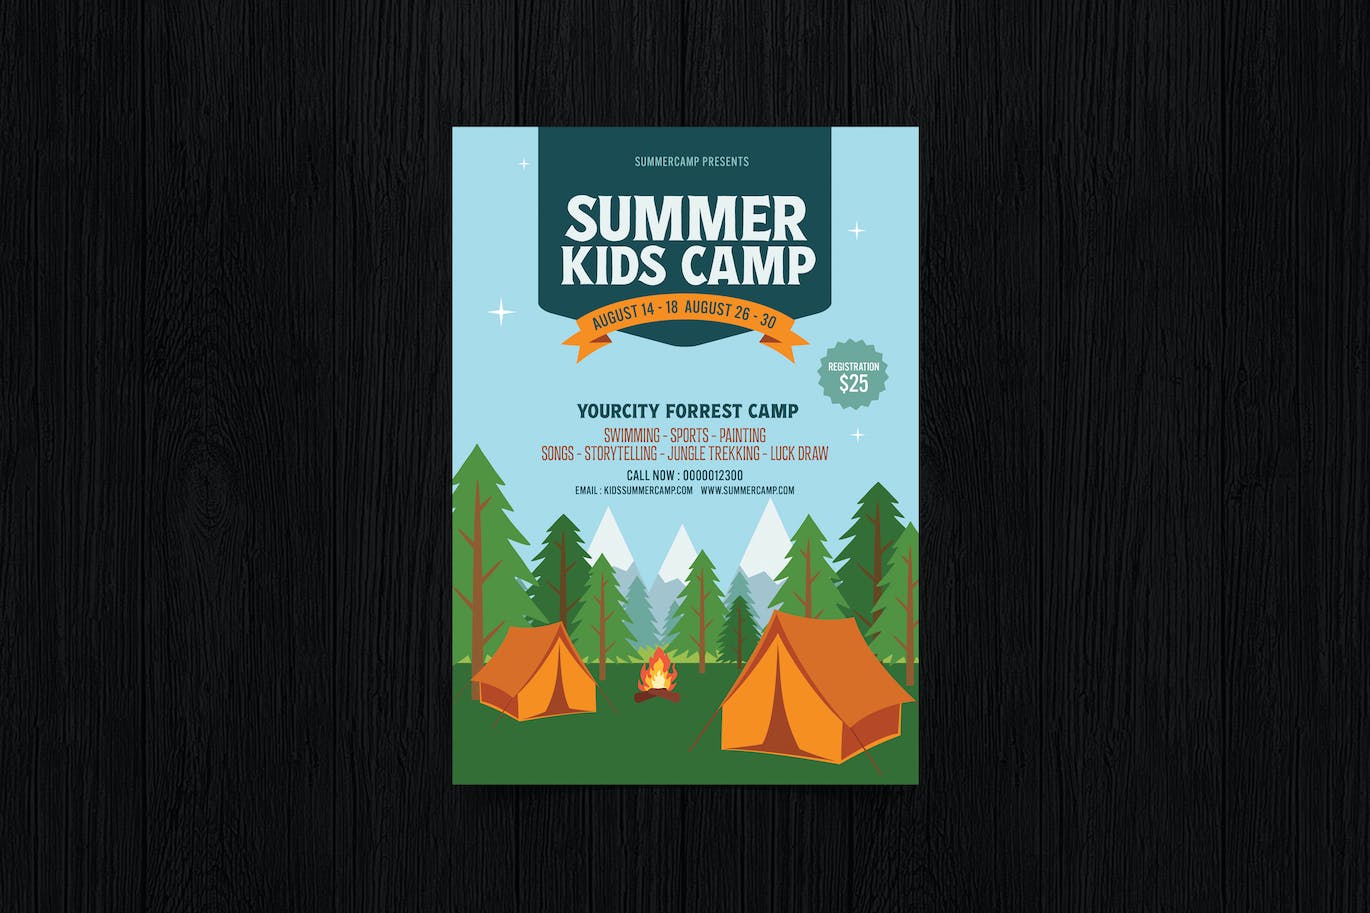 儿童夏令营宣传单设计模板 Summer Camp / Kids Camp 设计素材 第1张